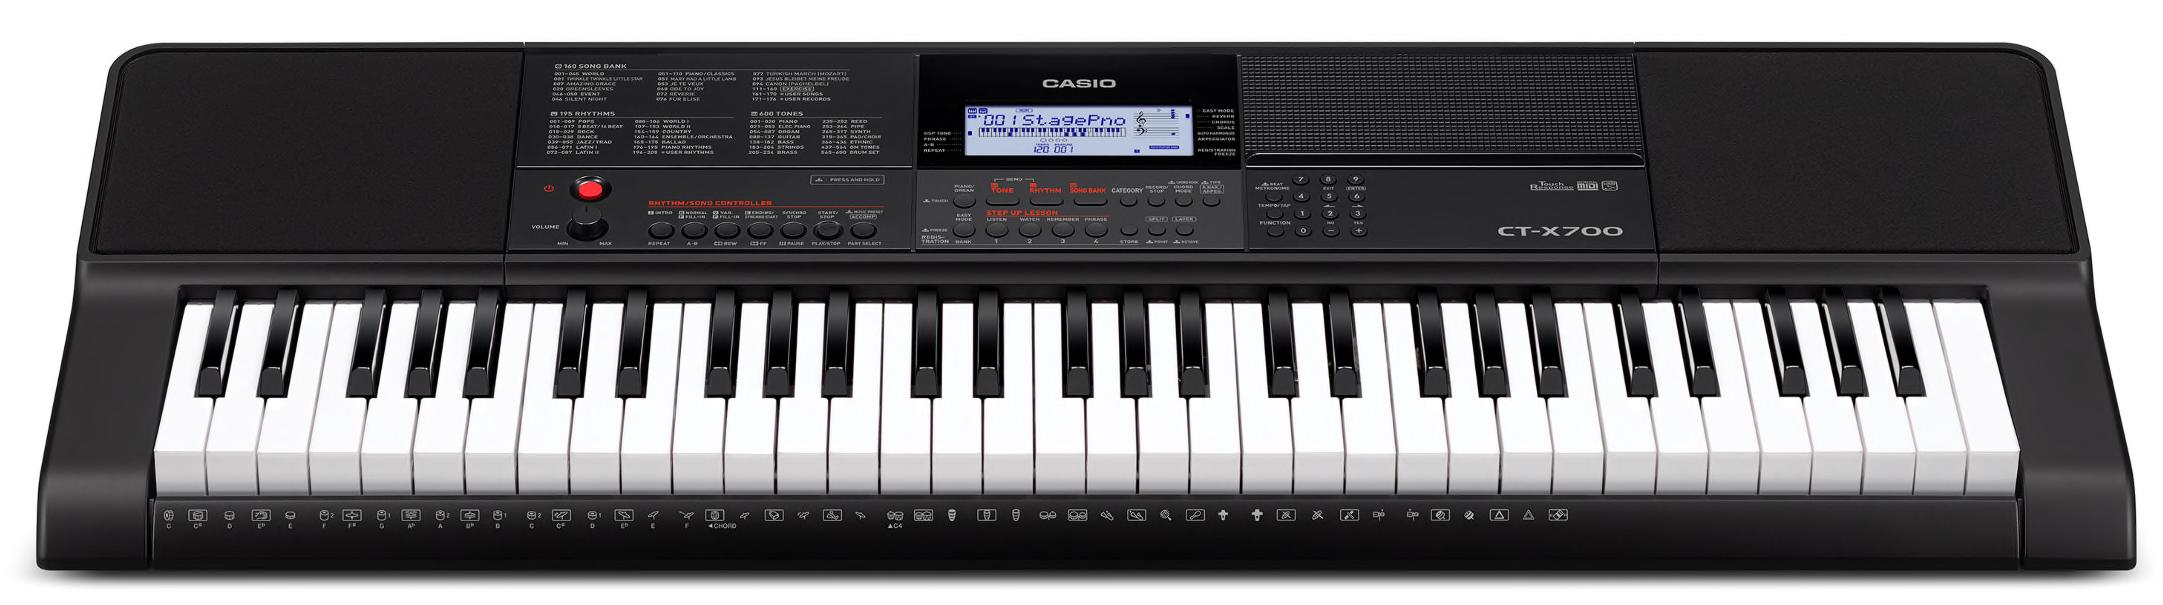 Casio CT-X700 Digital Keyboard 